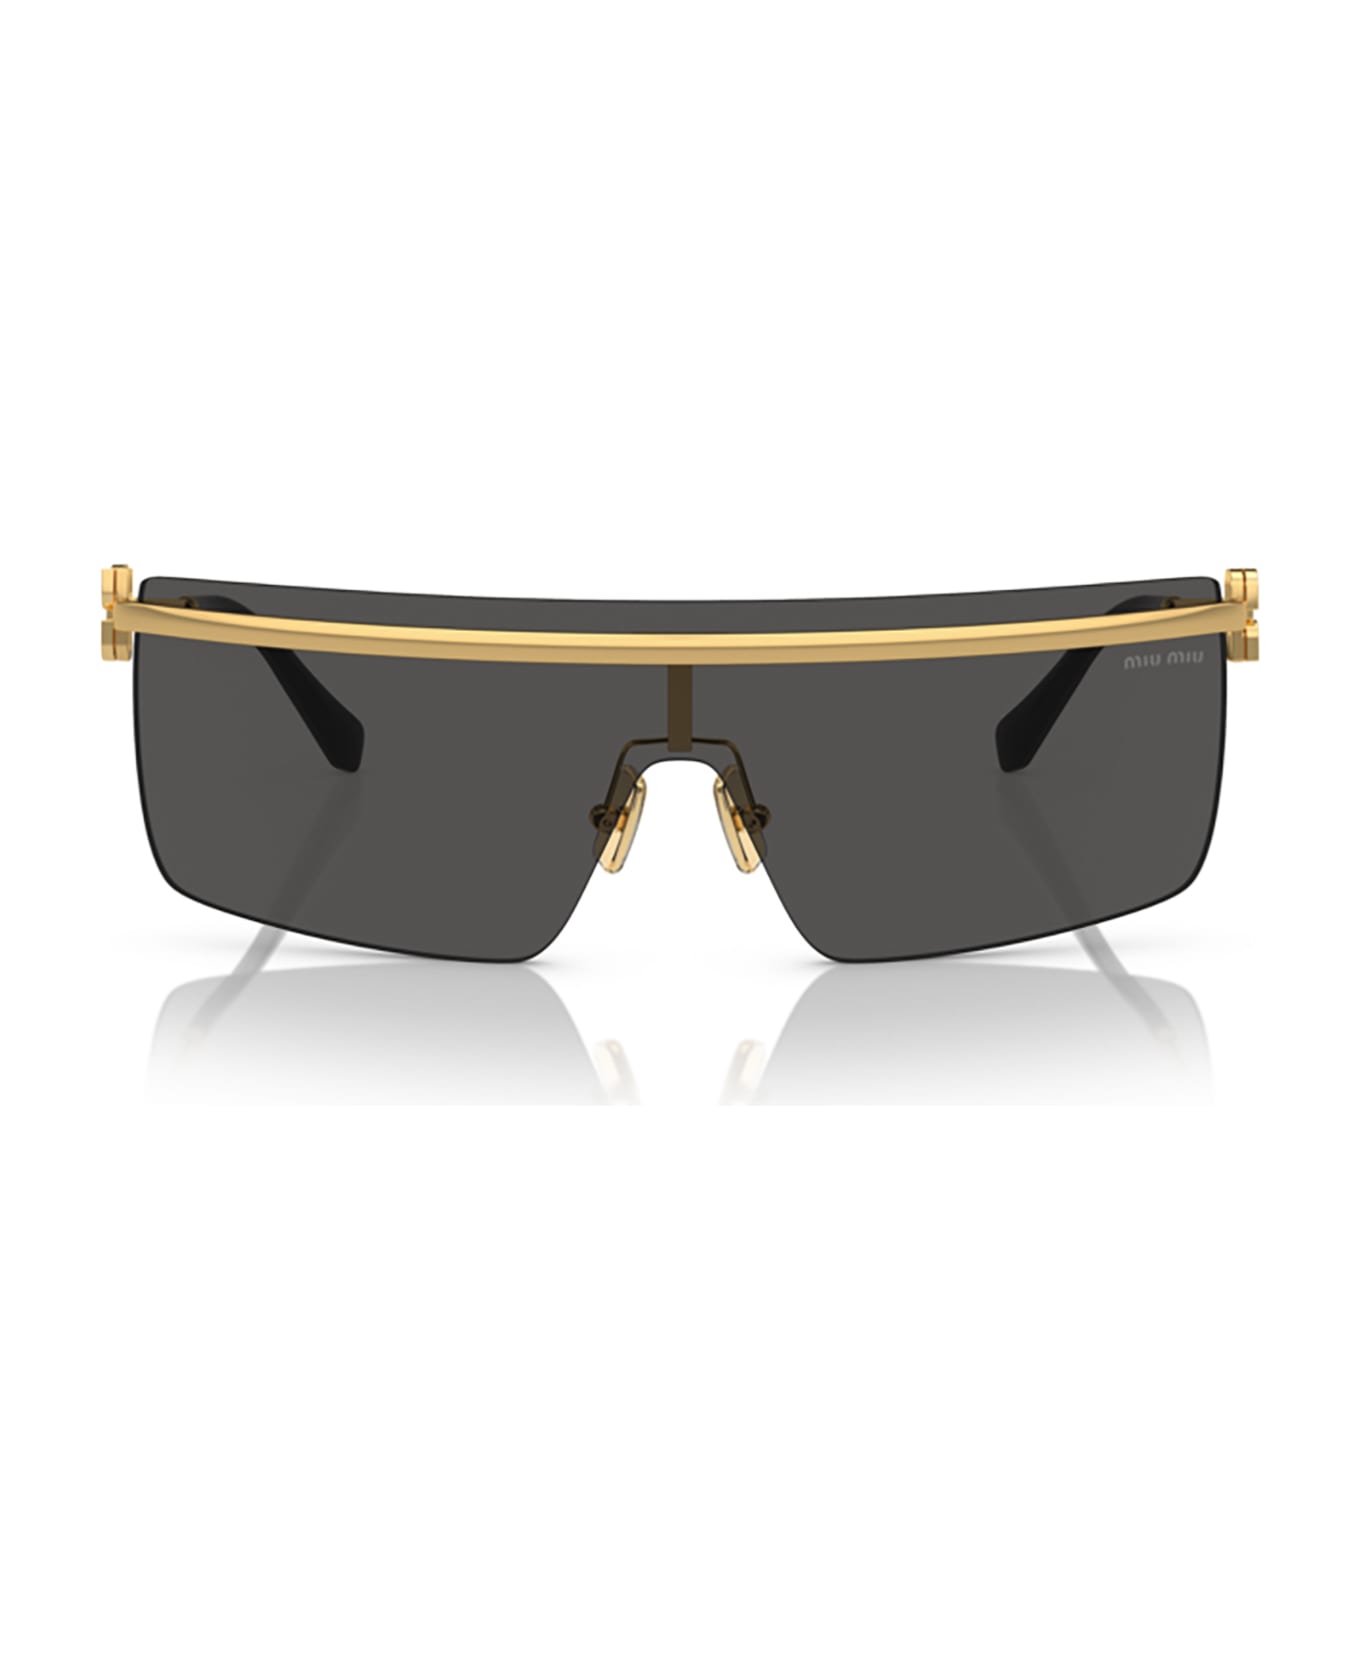 Miu Miu Eyewear Mu 50zs Gold Sunglasses - Gold